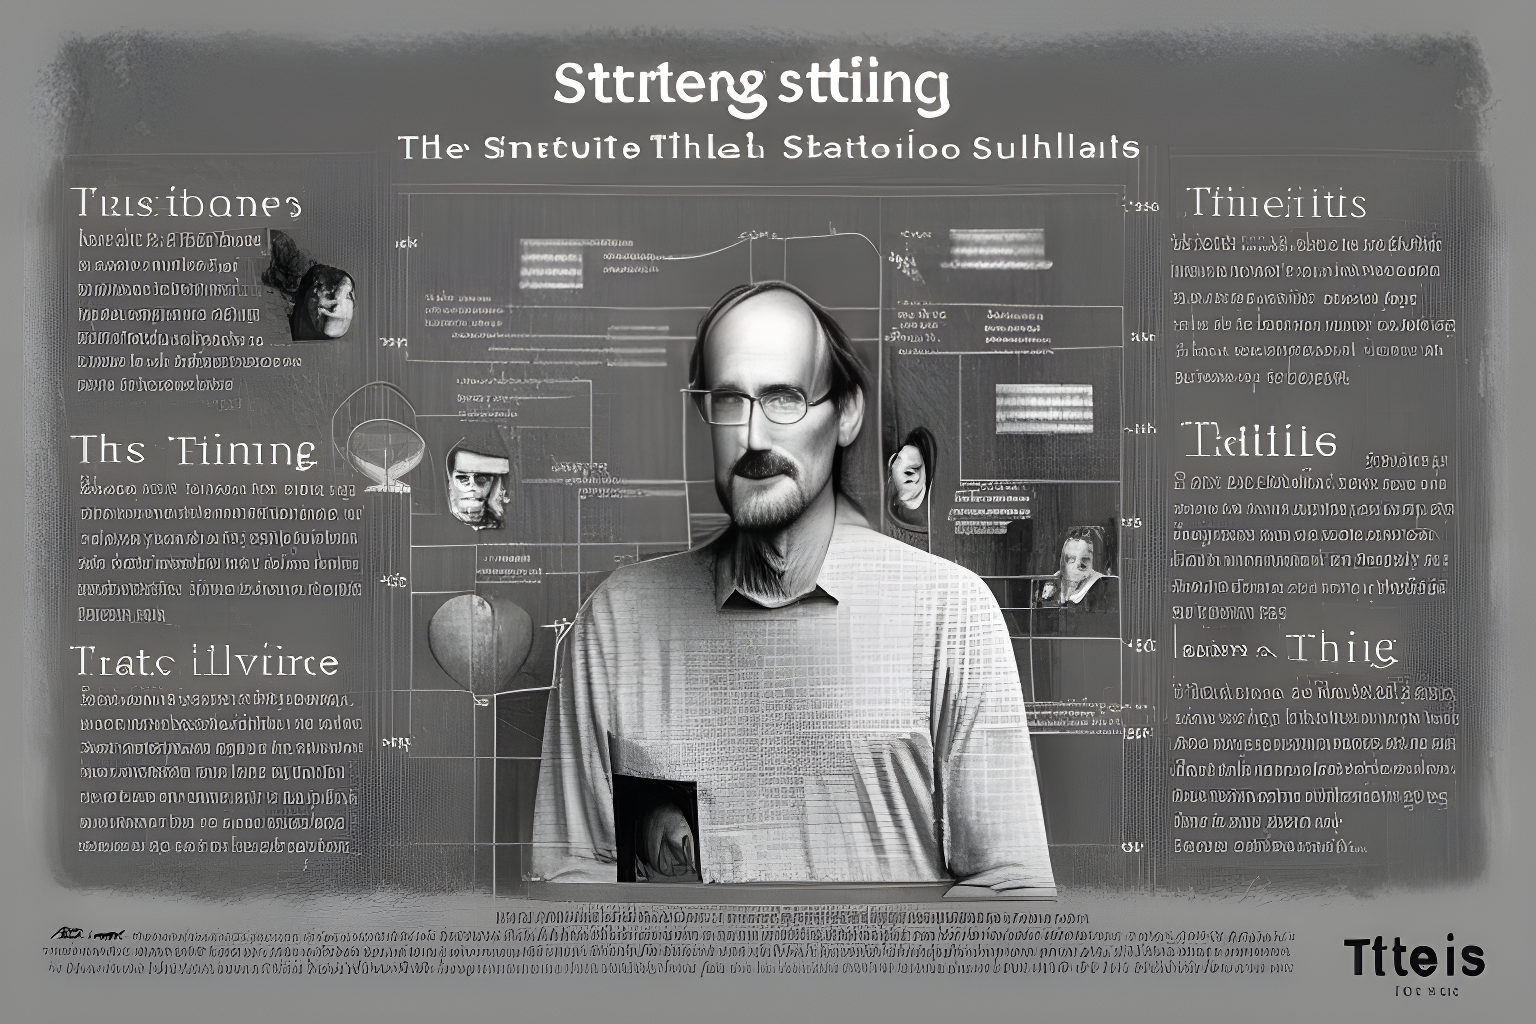 Steve Jobs storytelling framework